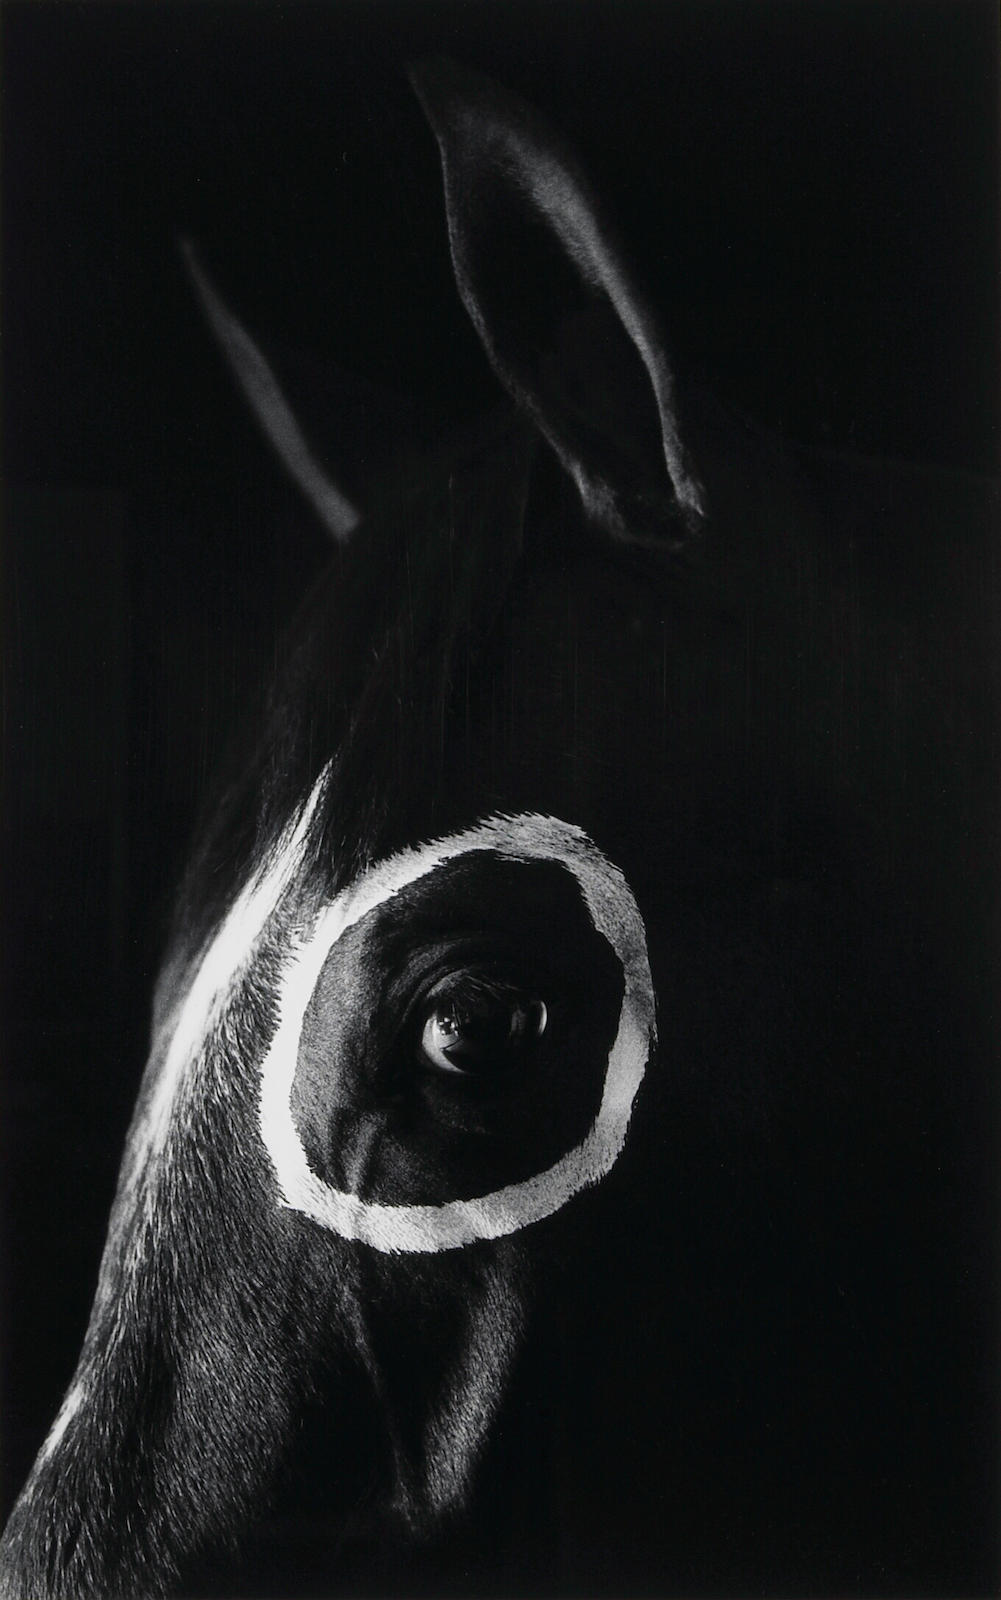 middleamerica:Caballo con Circulo (Horse with Circle), 1994, Flor Garduño